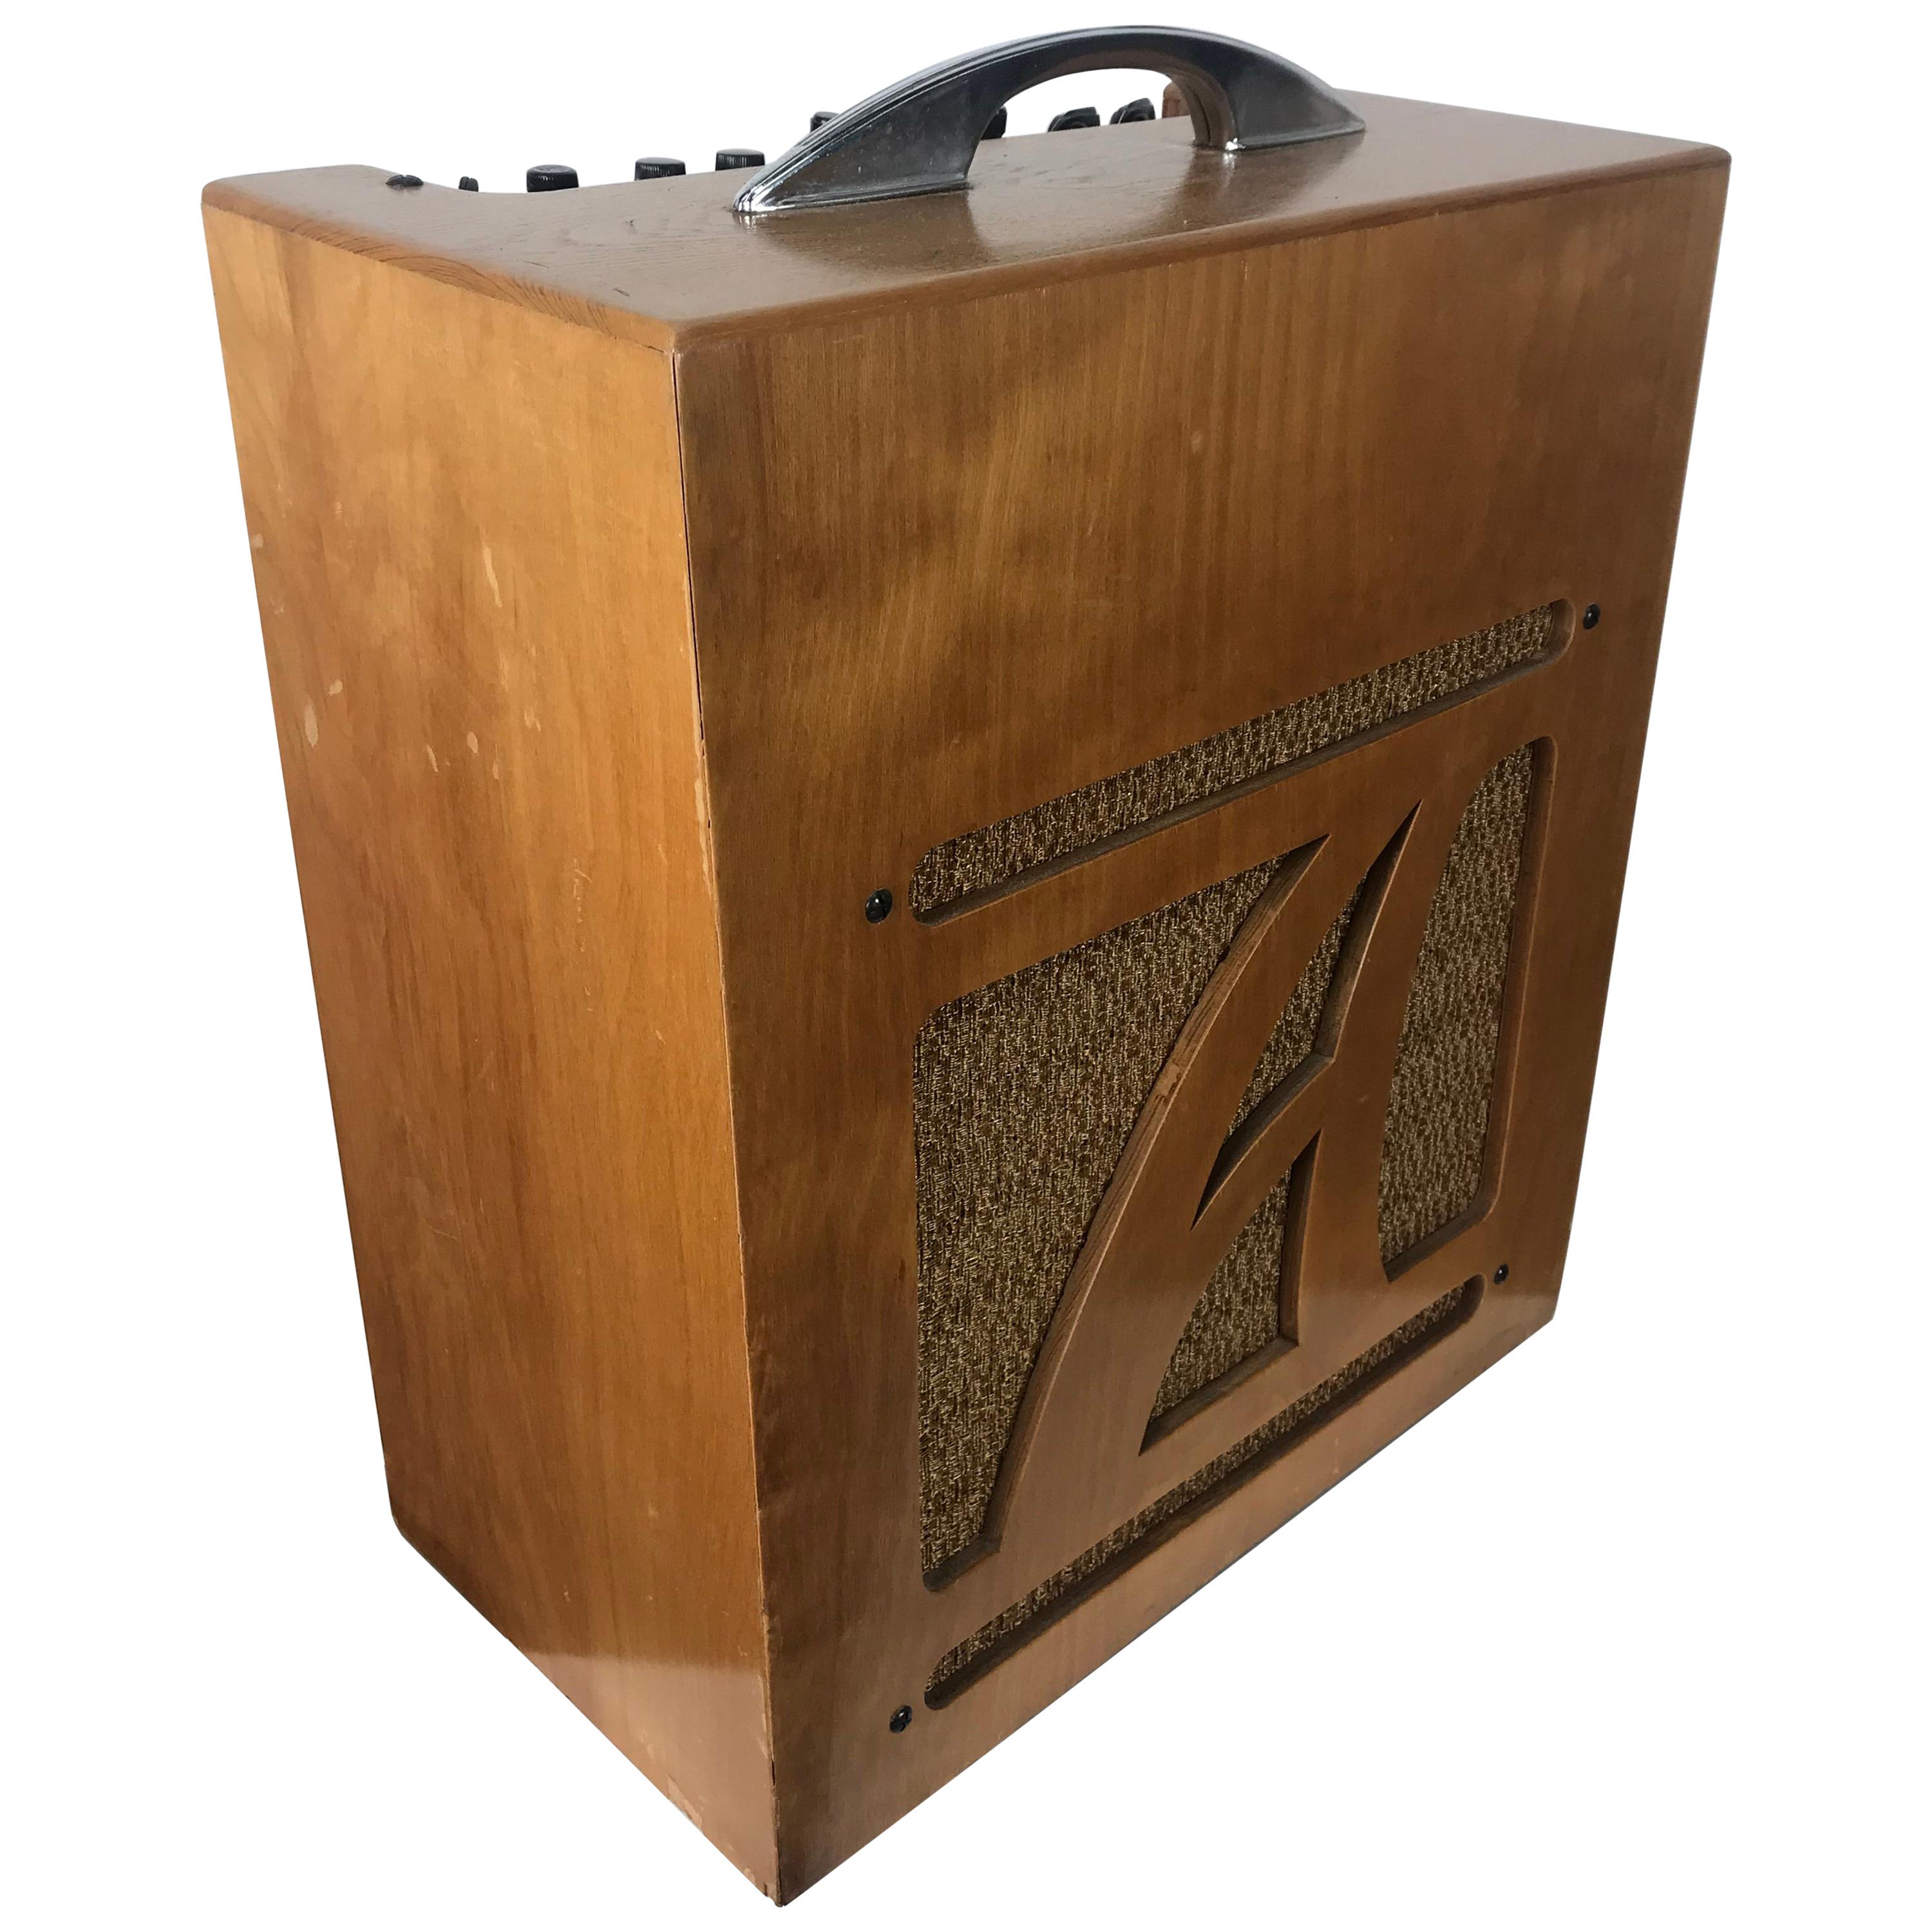 Äußerst seltener Alamo Electrical Musical Amplifier, Modell 6A, 1954